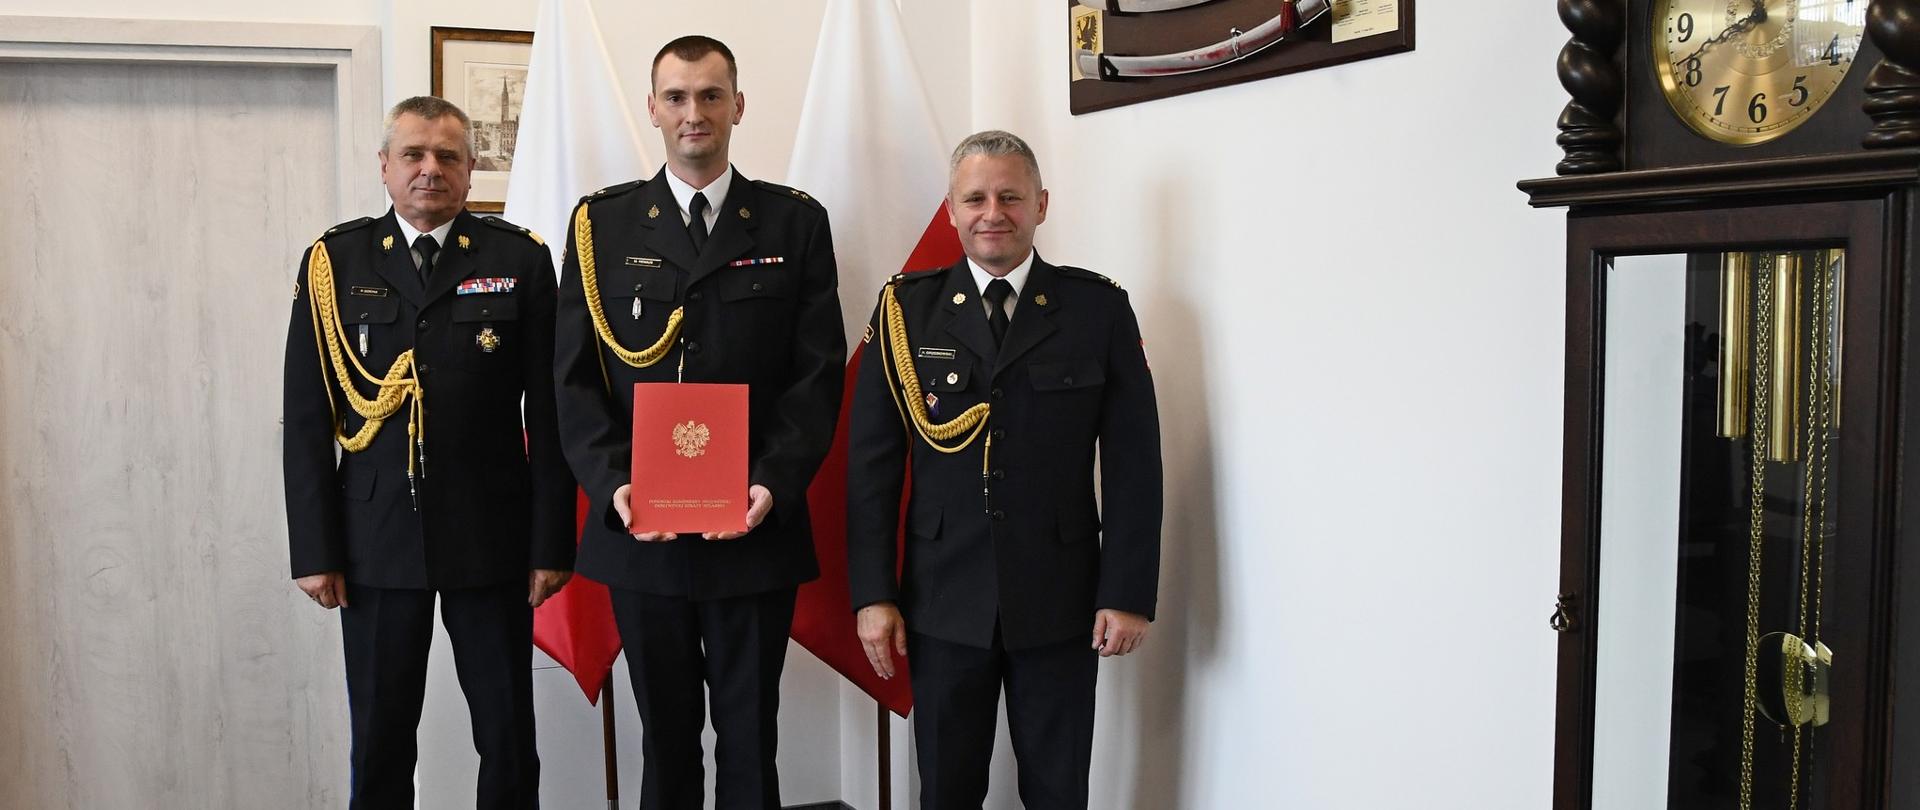 Pomorski Komendant Wojewódzki PSP powierza obowiązki nowemu zastępcy komendanta powiatowego PSP w Nowym Dworze Gdańskim.